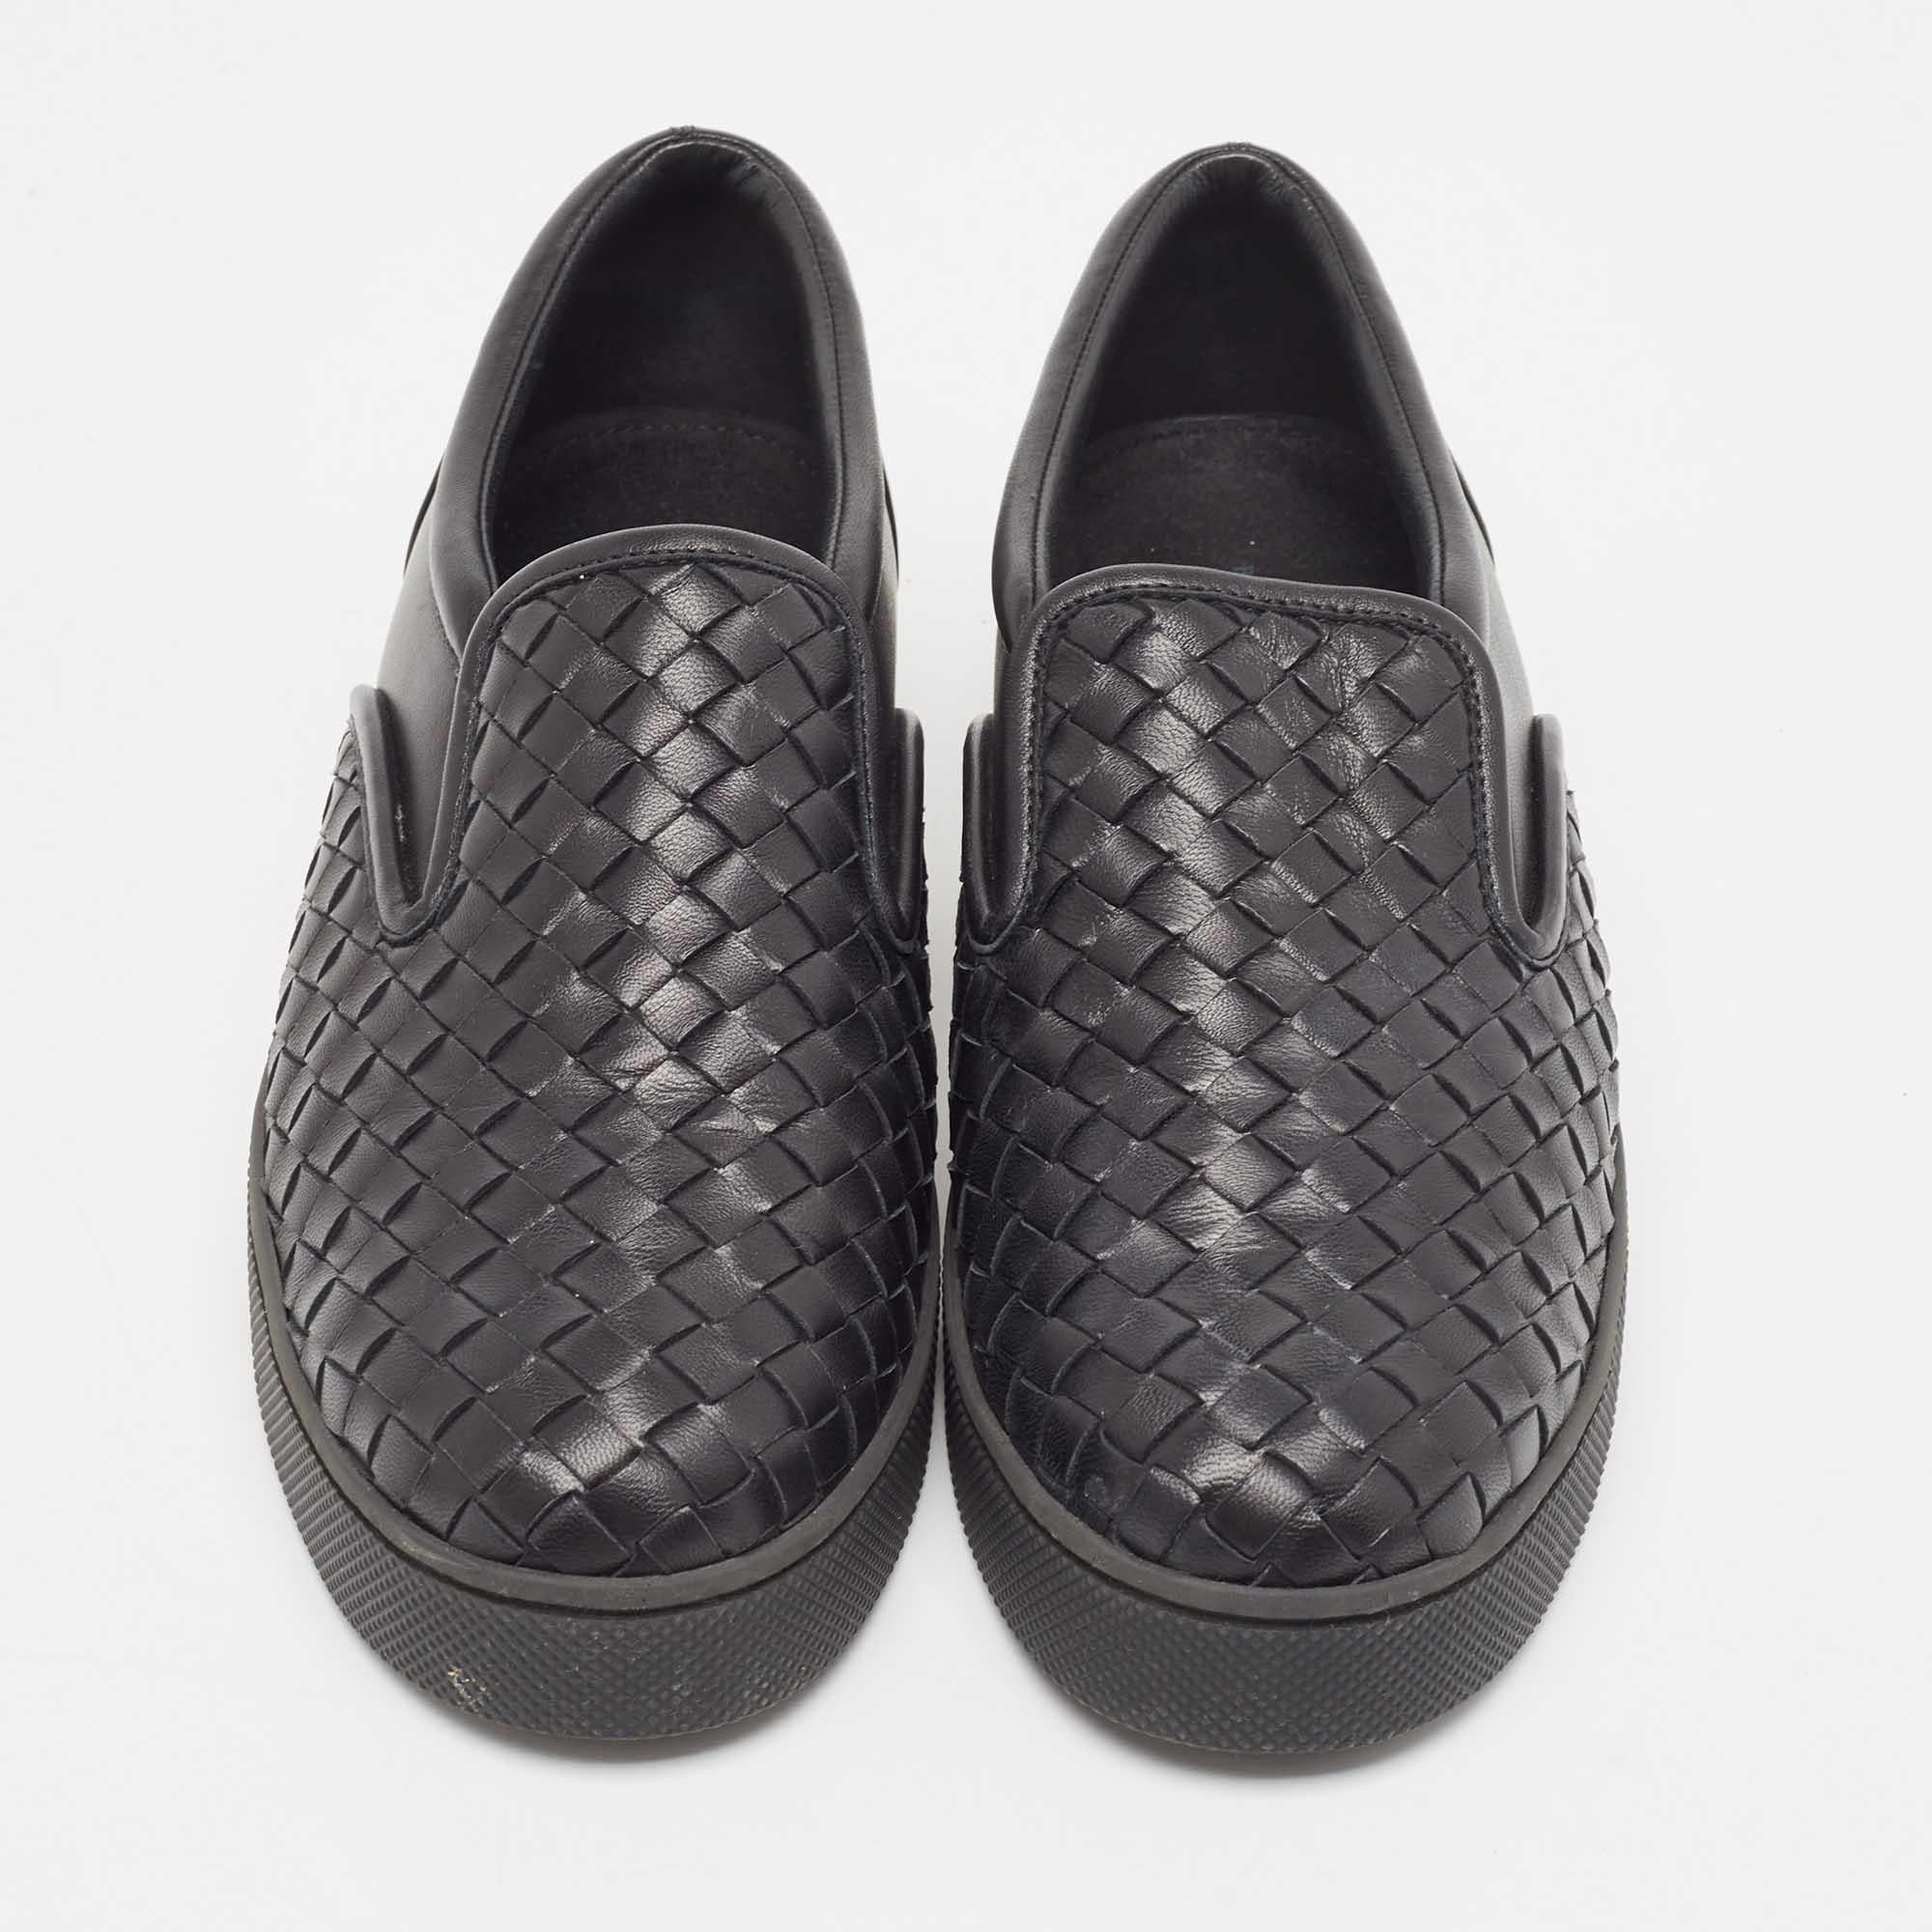 Bottega Veneta Black Intrecciato Leather Slip On Sneakers Size 40 2